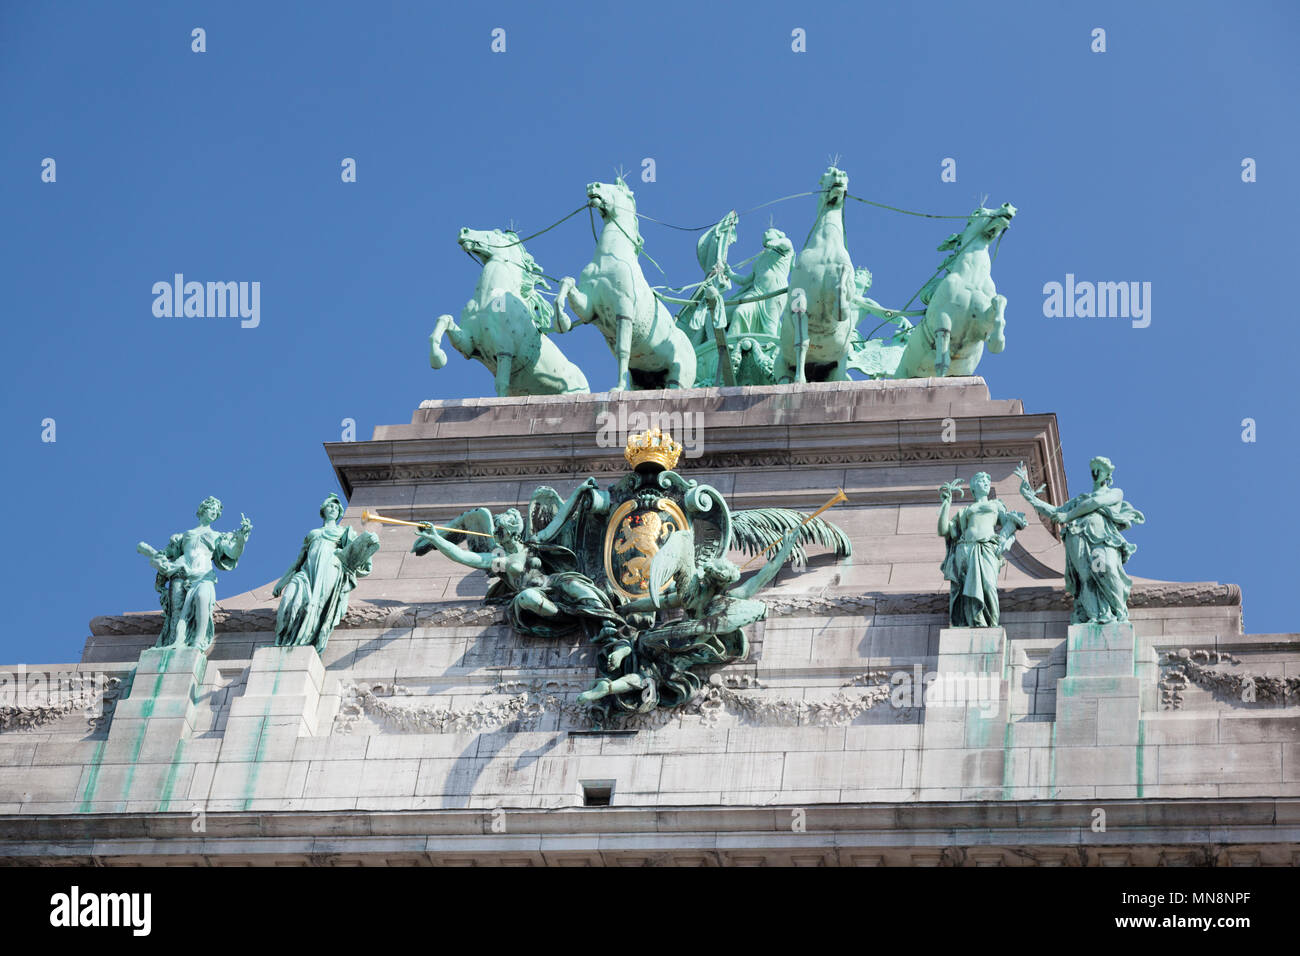 Belgium, Brussels, Triumphal Arch at Parc du Cinquantenaire. Stock Photo